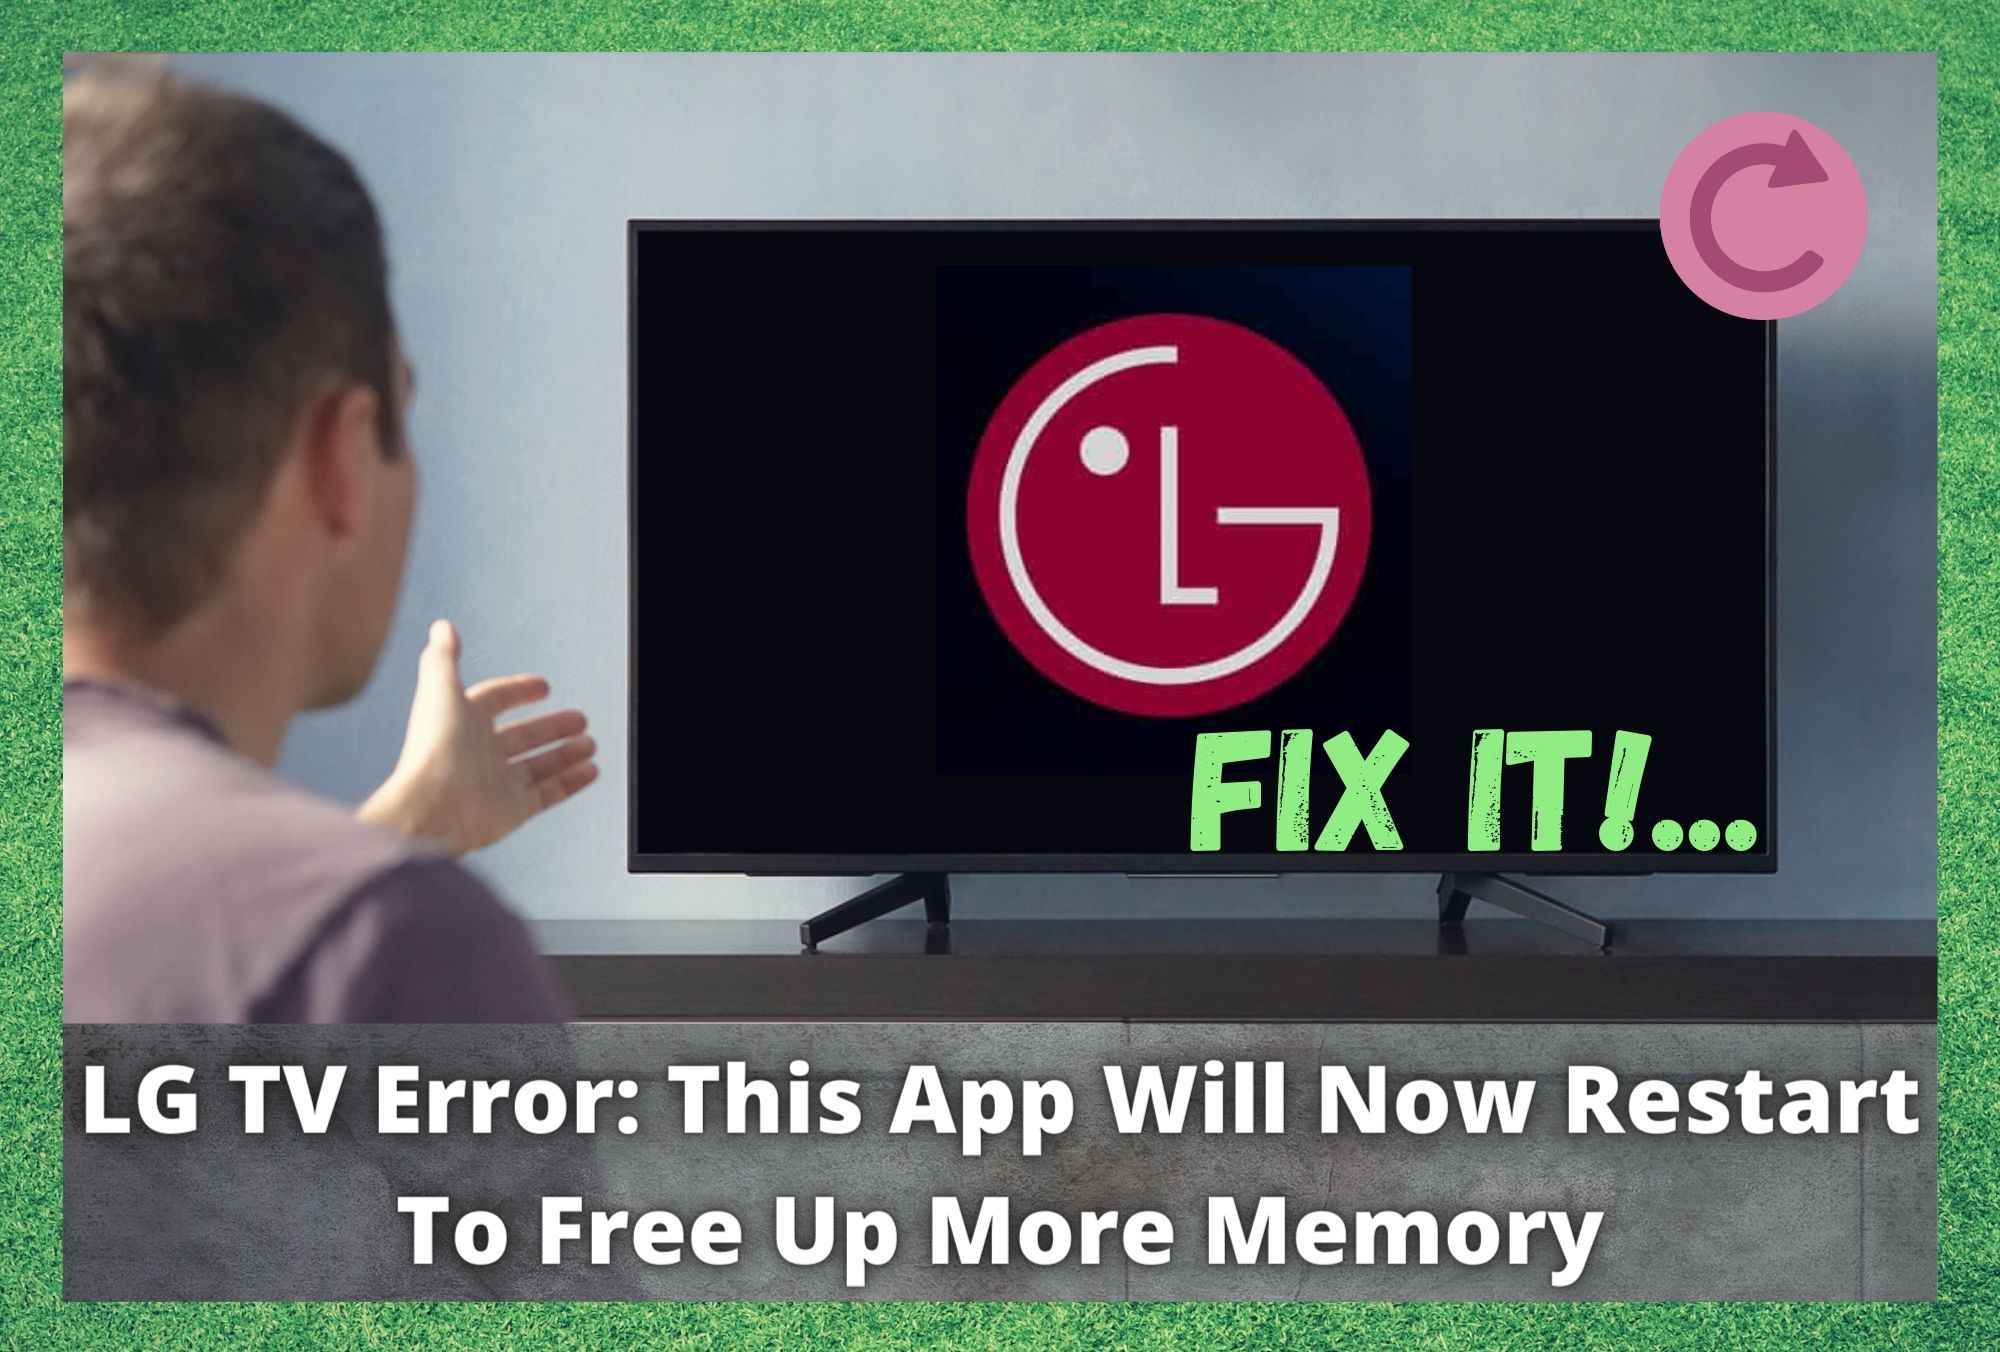 ຄວາມ​ຜິດ​ພາດ LG TV​: app ນີ້​ໃນ​ປັດ​ຈຸ​ບັນ​ຈະ restart ເພື່ອ​ເພີ່ມ​ຄວາມ​ຈໍາ​ເພີ່ມ​ເຕີມ (6 ການ​ແກ້​ໄຂ​)